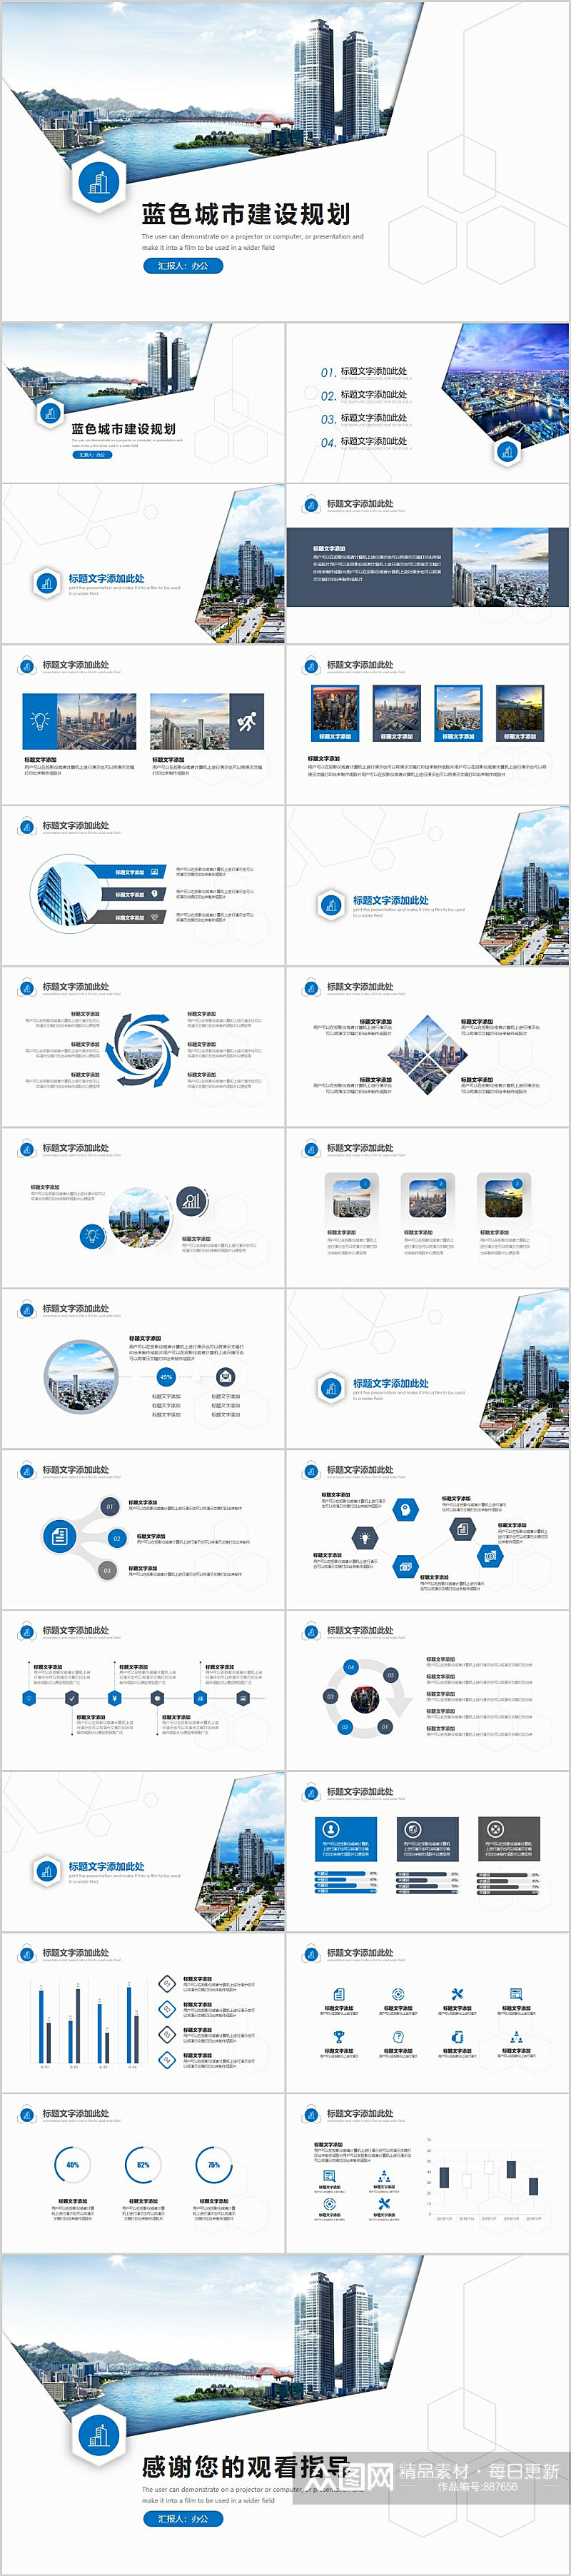 蓝色城市建设规划PPT模版素材